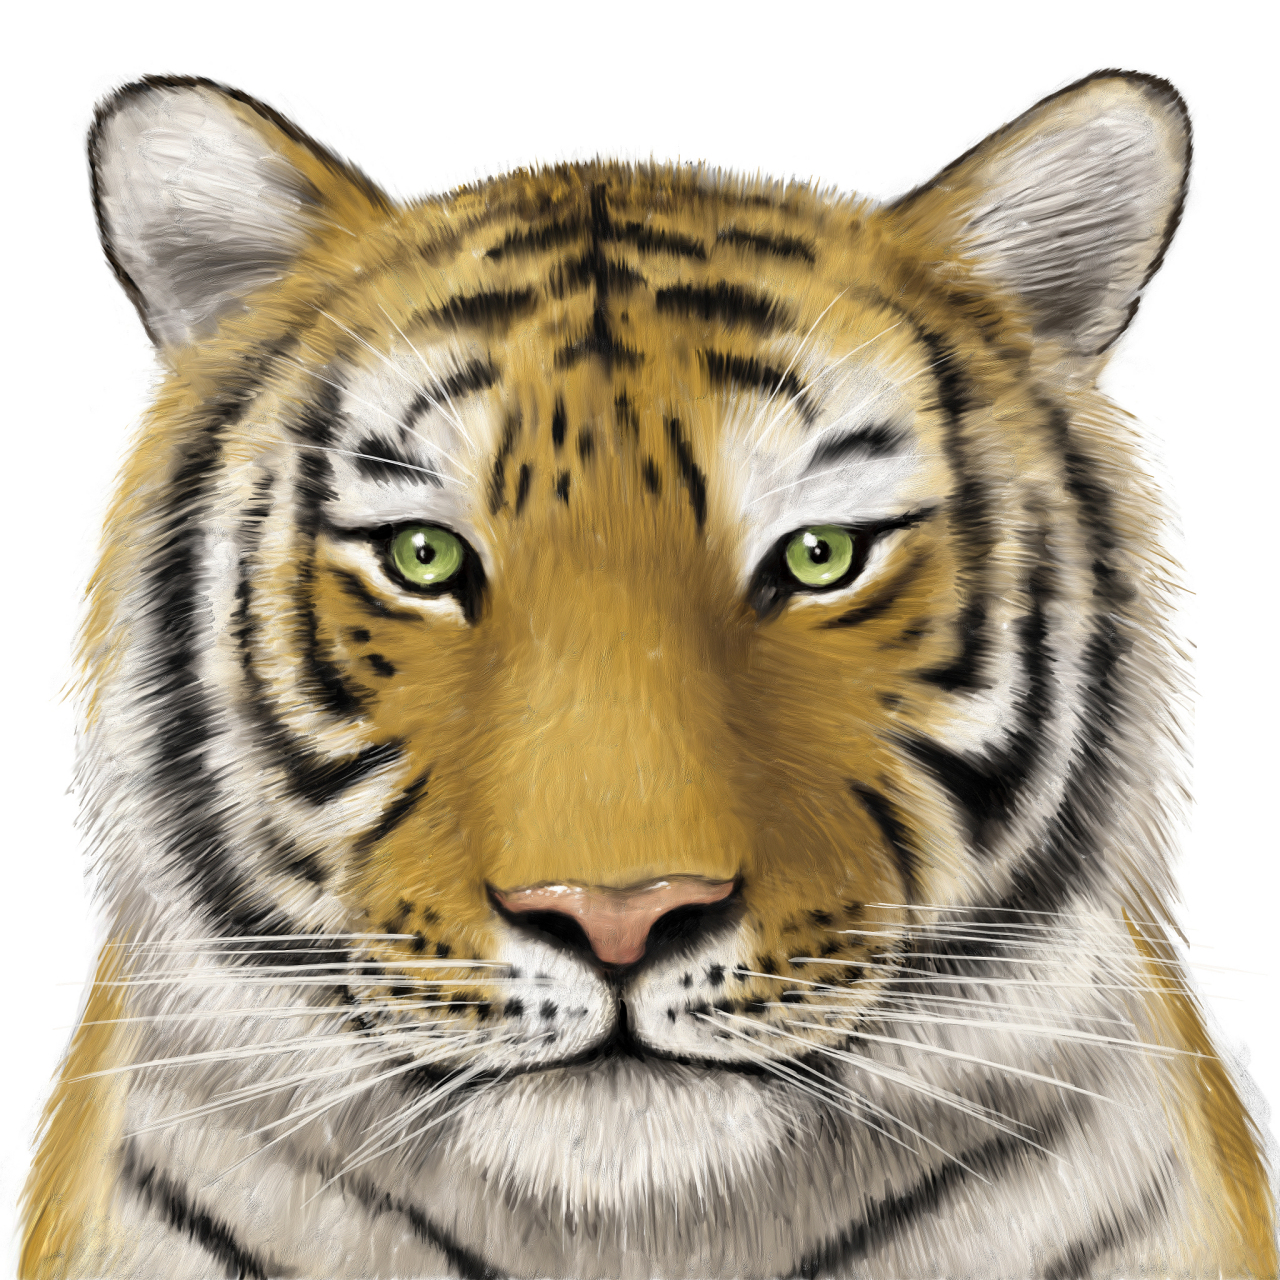 老虎的画像 一只图片